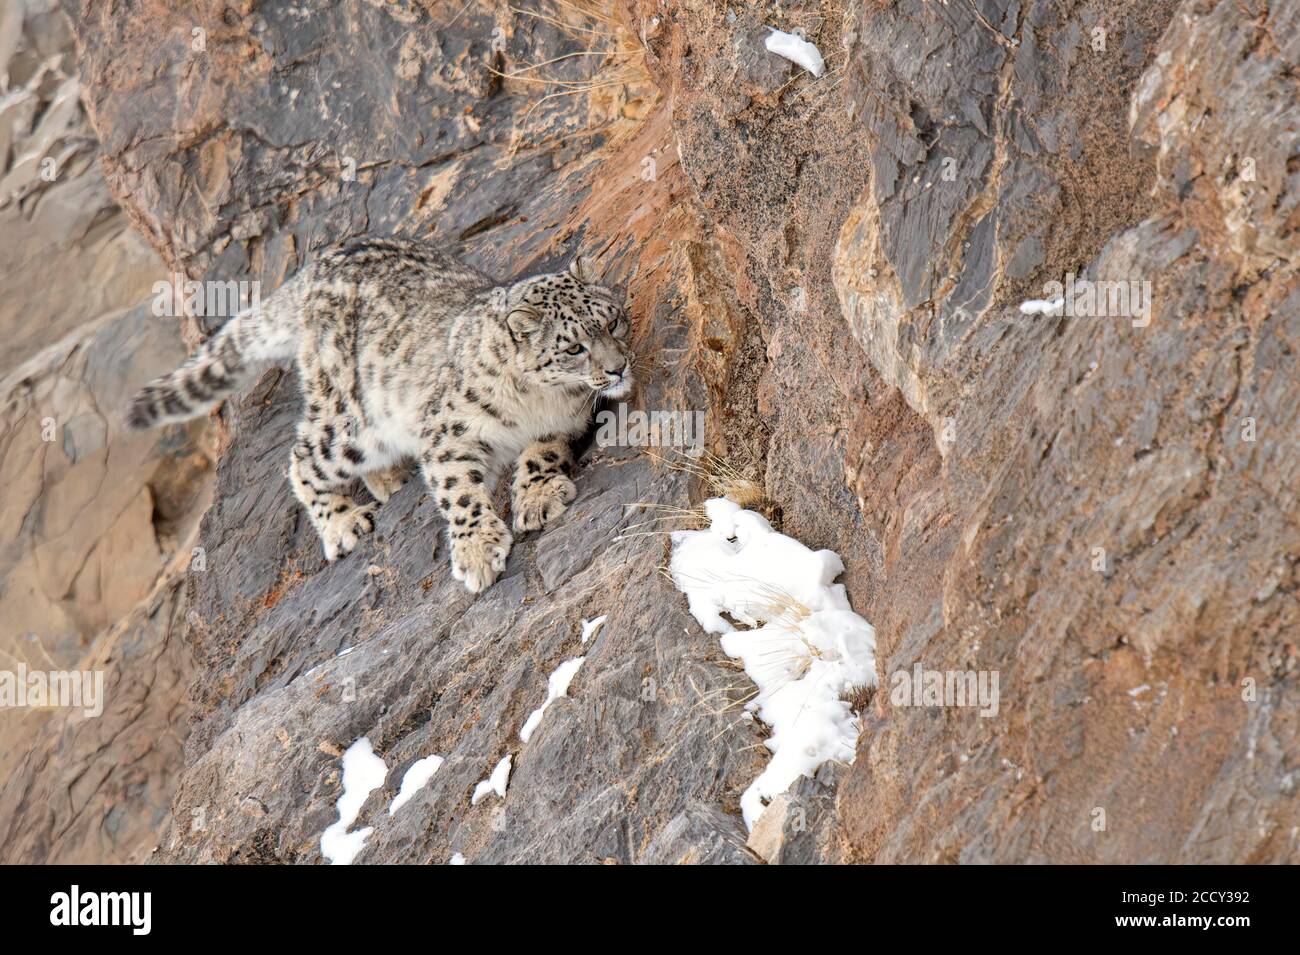 Léopard des neiges (Panthera uncia) sur la roche, région de Spiti dans l'Himalaya indien, Inde Banque D'Images